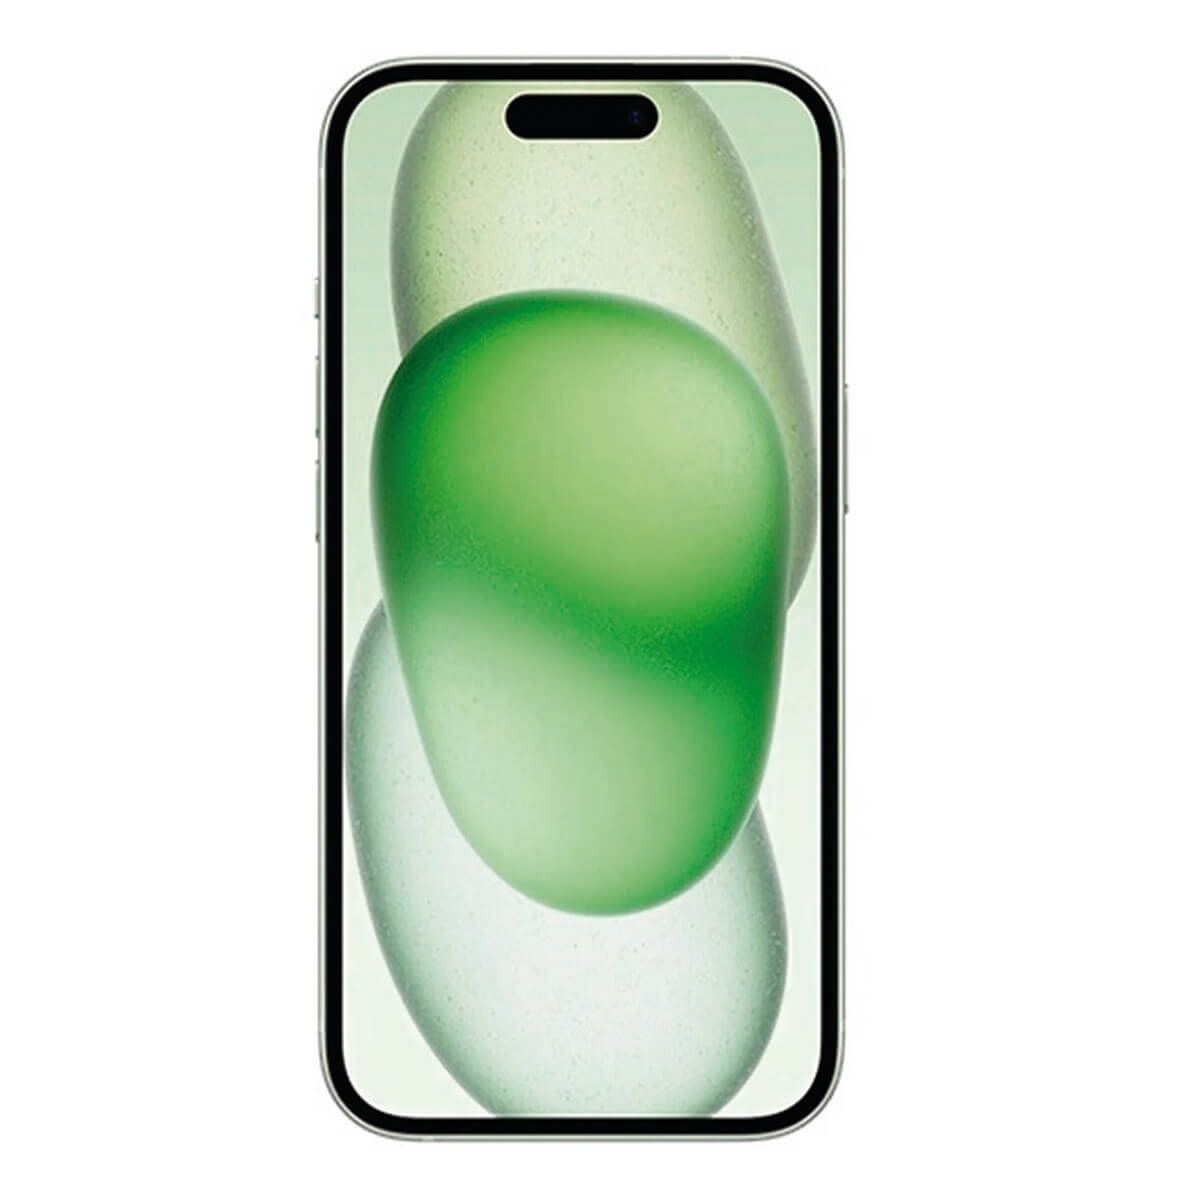 iPhone 15 Plus - 256GB - Verde